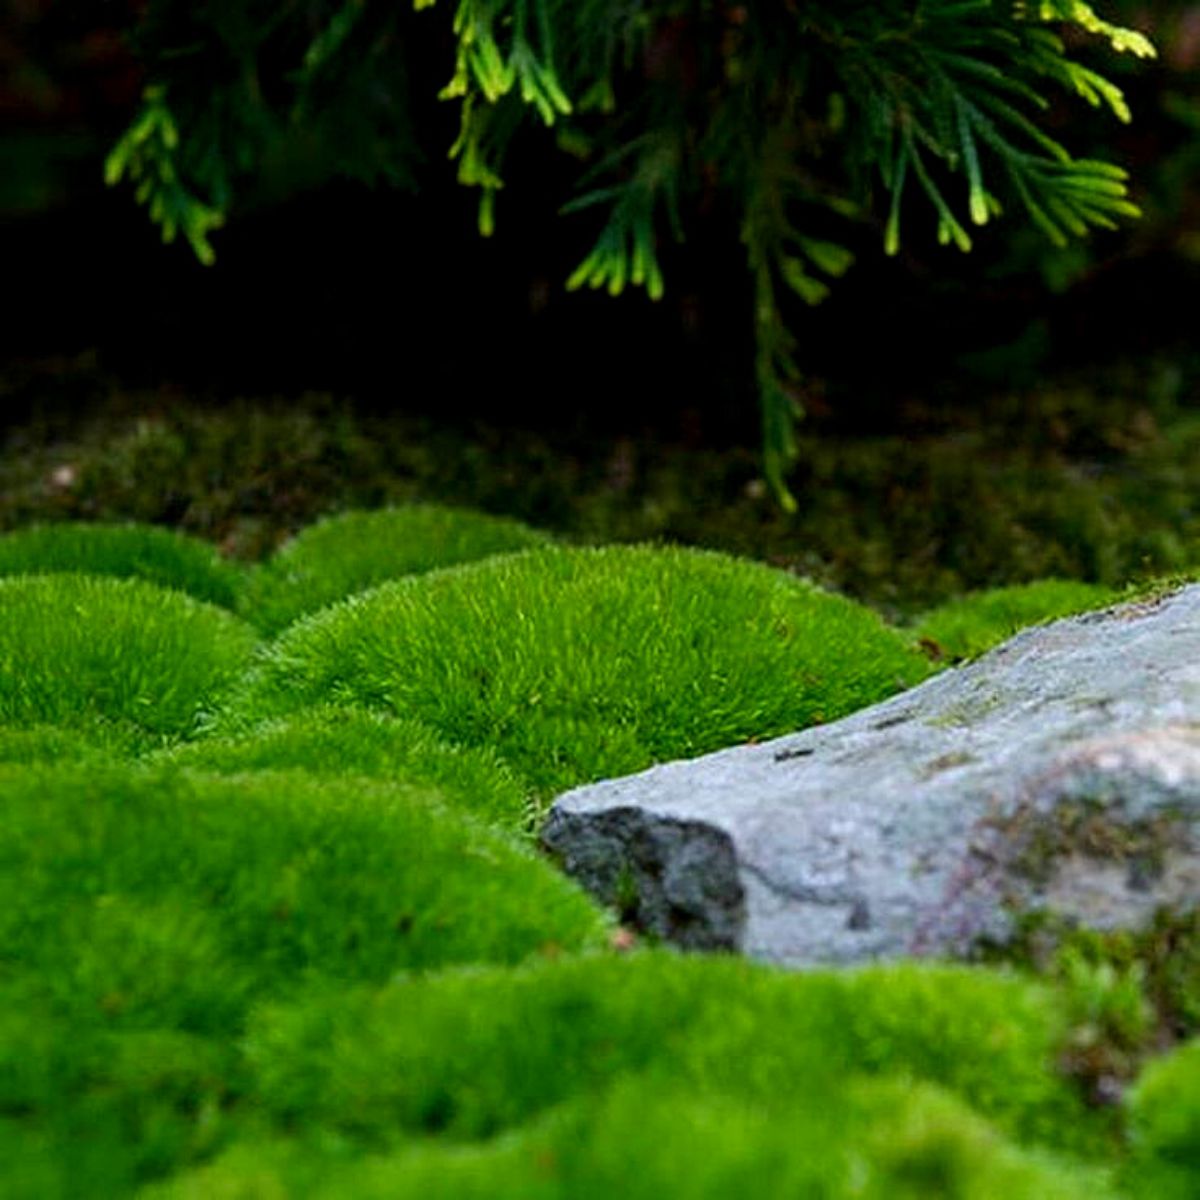 Ideal moss plants for moss gardens